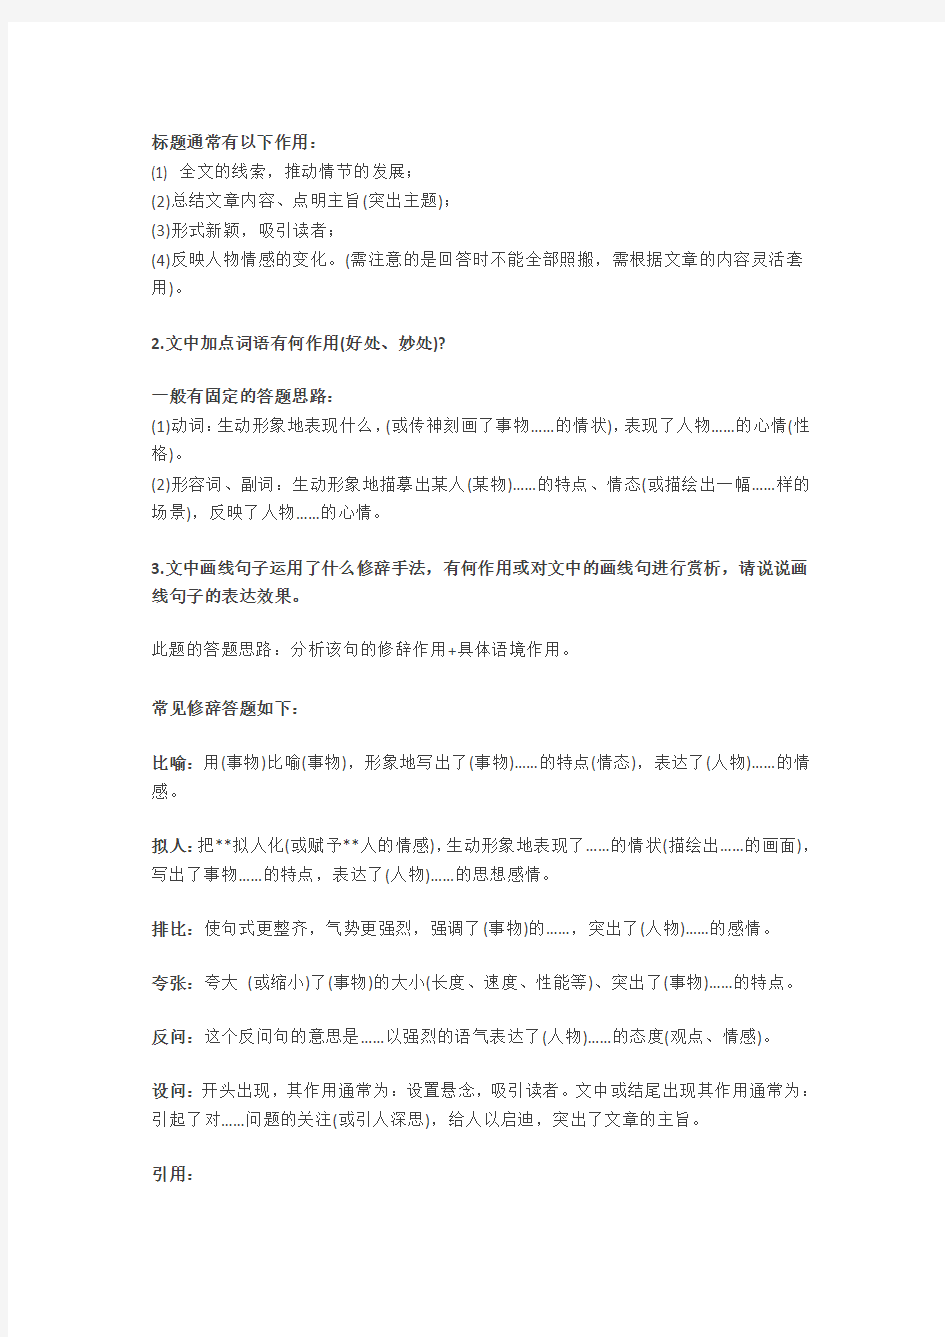 初中语文阅读理解的16个常考题+答题模板